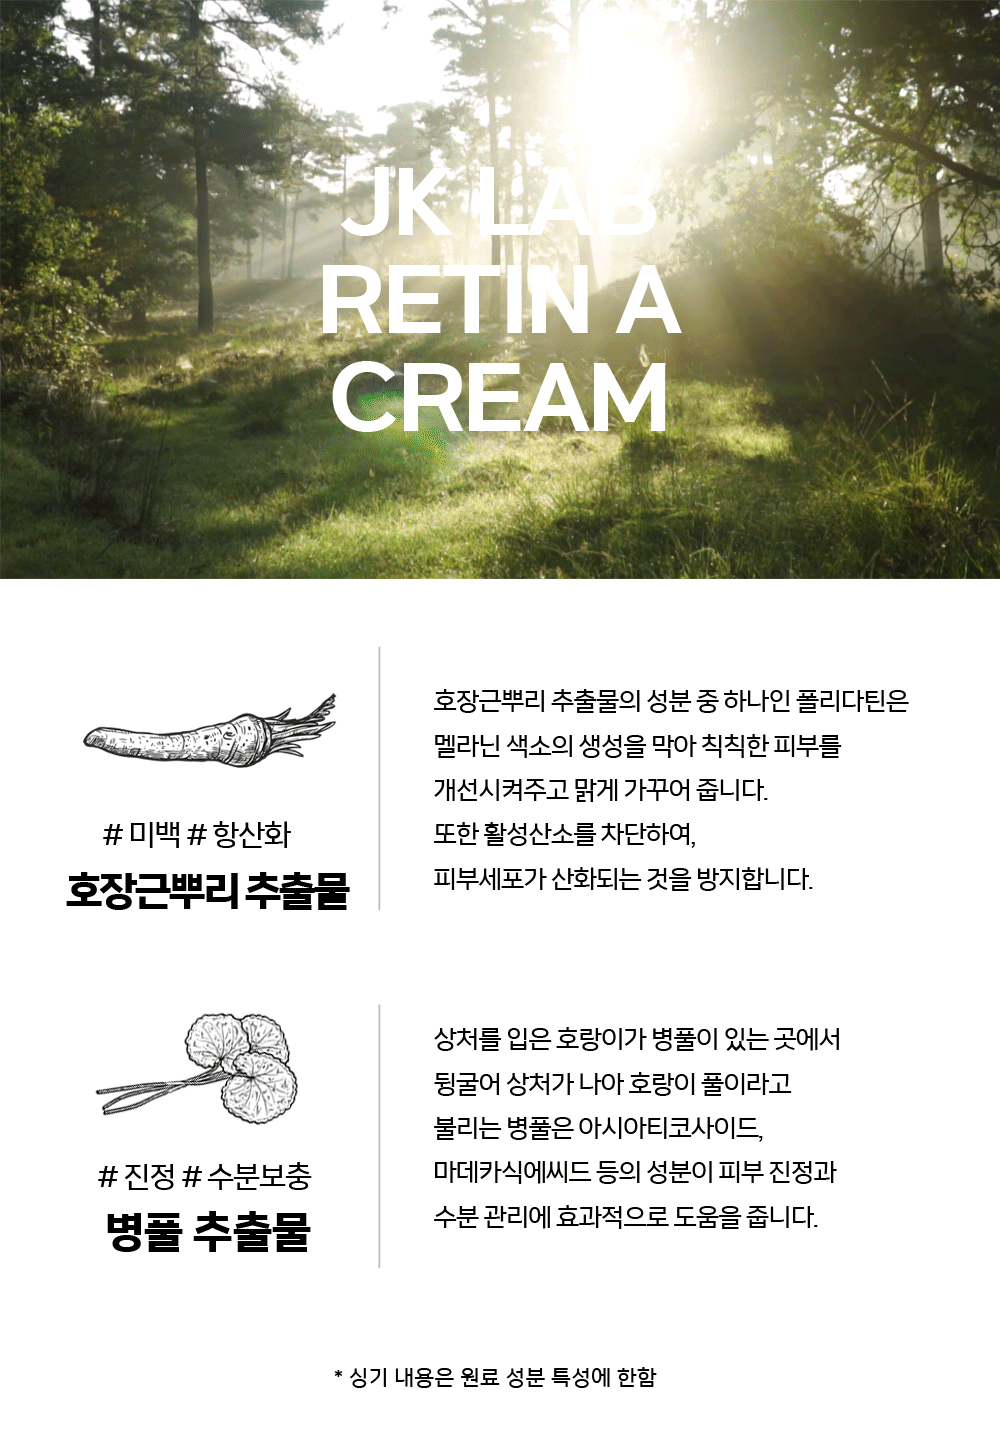 retin_a_cream_detail_02